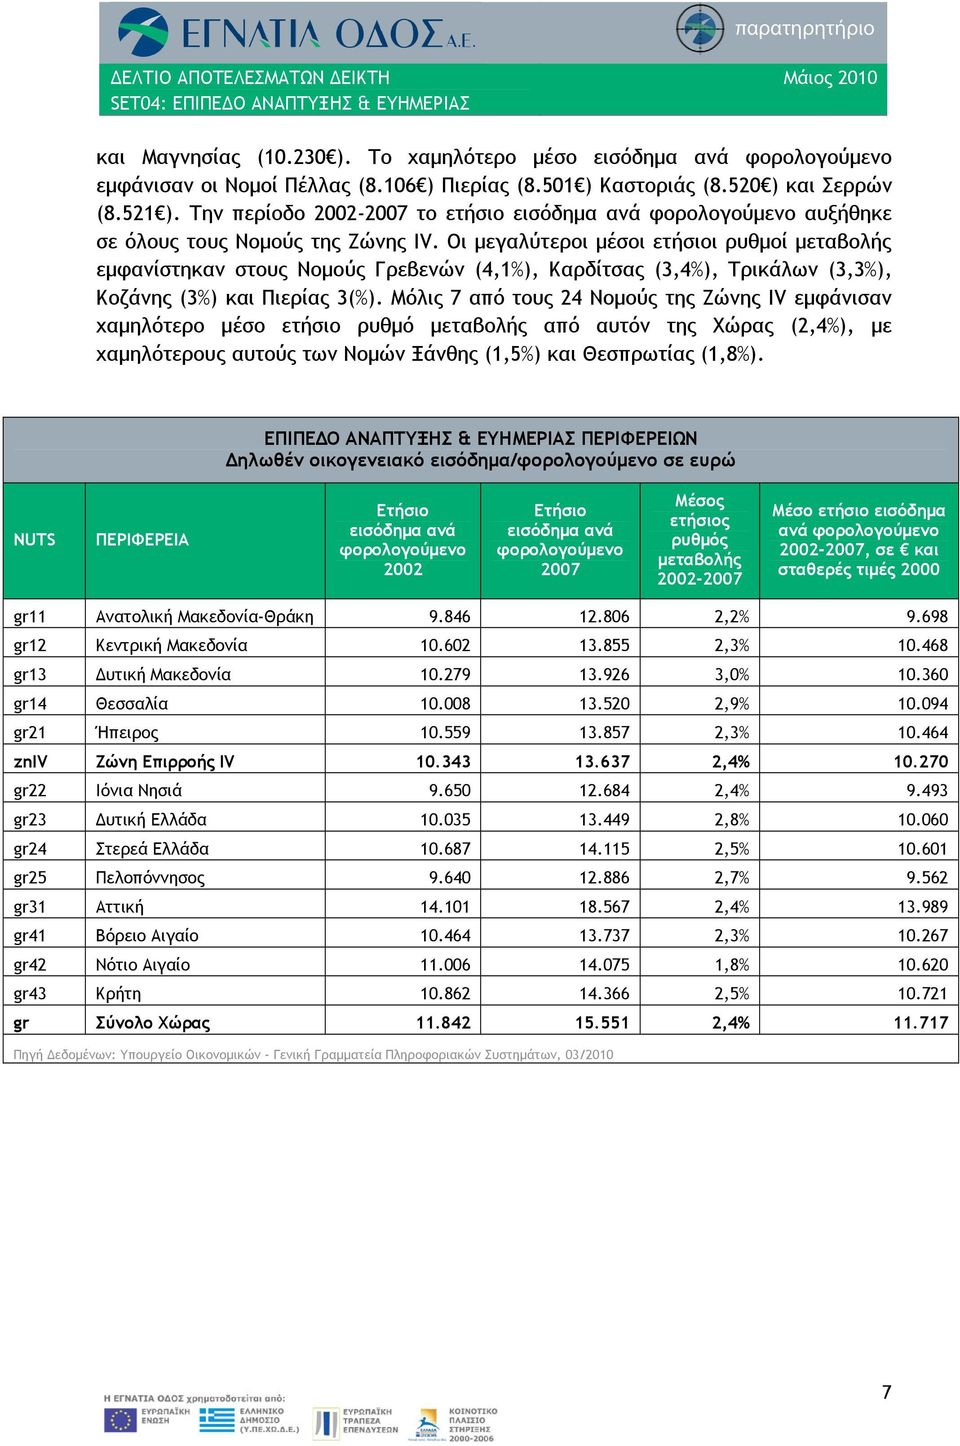 Οι μεγαλύτεροι μέσοι ετήσιοι ρυθμοί μεταβολής εμφανίστηκαν στους Νομούς Γρεβενών (4,1%), Καρδίτσας (3,4%), Τρικάλων (3,3%), Κοζάνης (3%) και Πιερίας 3(%).